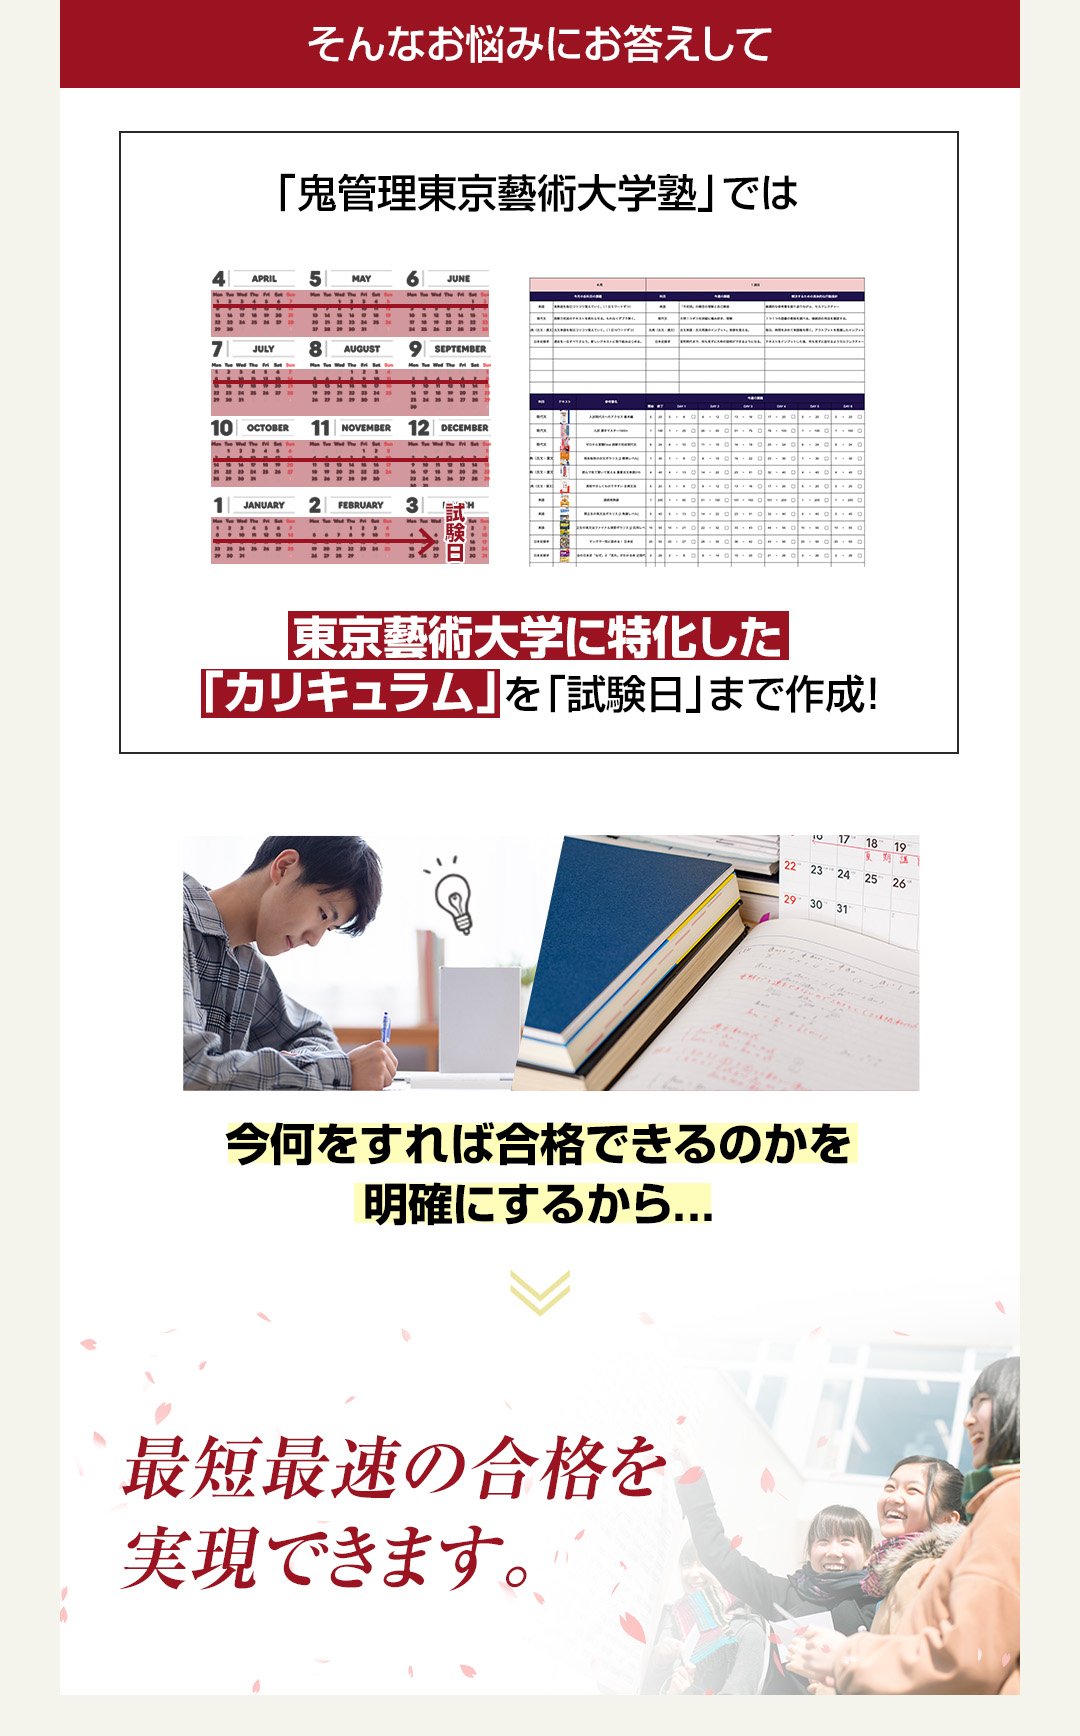 「鬼管理東京藝術大学塾」では東京藝術大学に特化した「カリキュラム」を「試験日」まで作成